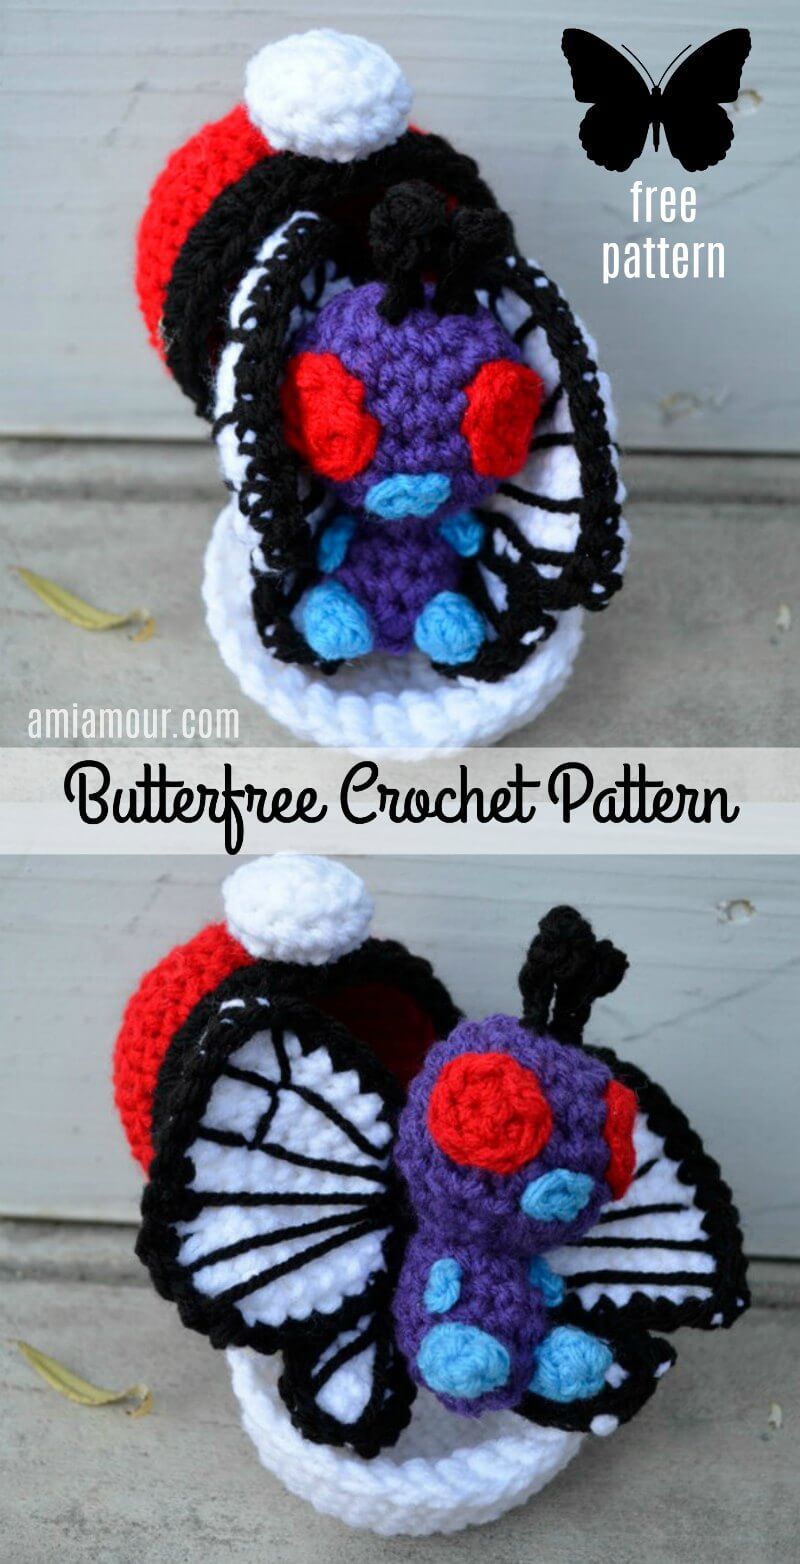 Butterfree Crochet Pattern - Free